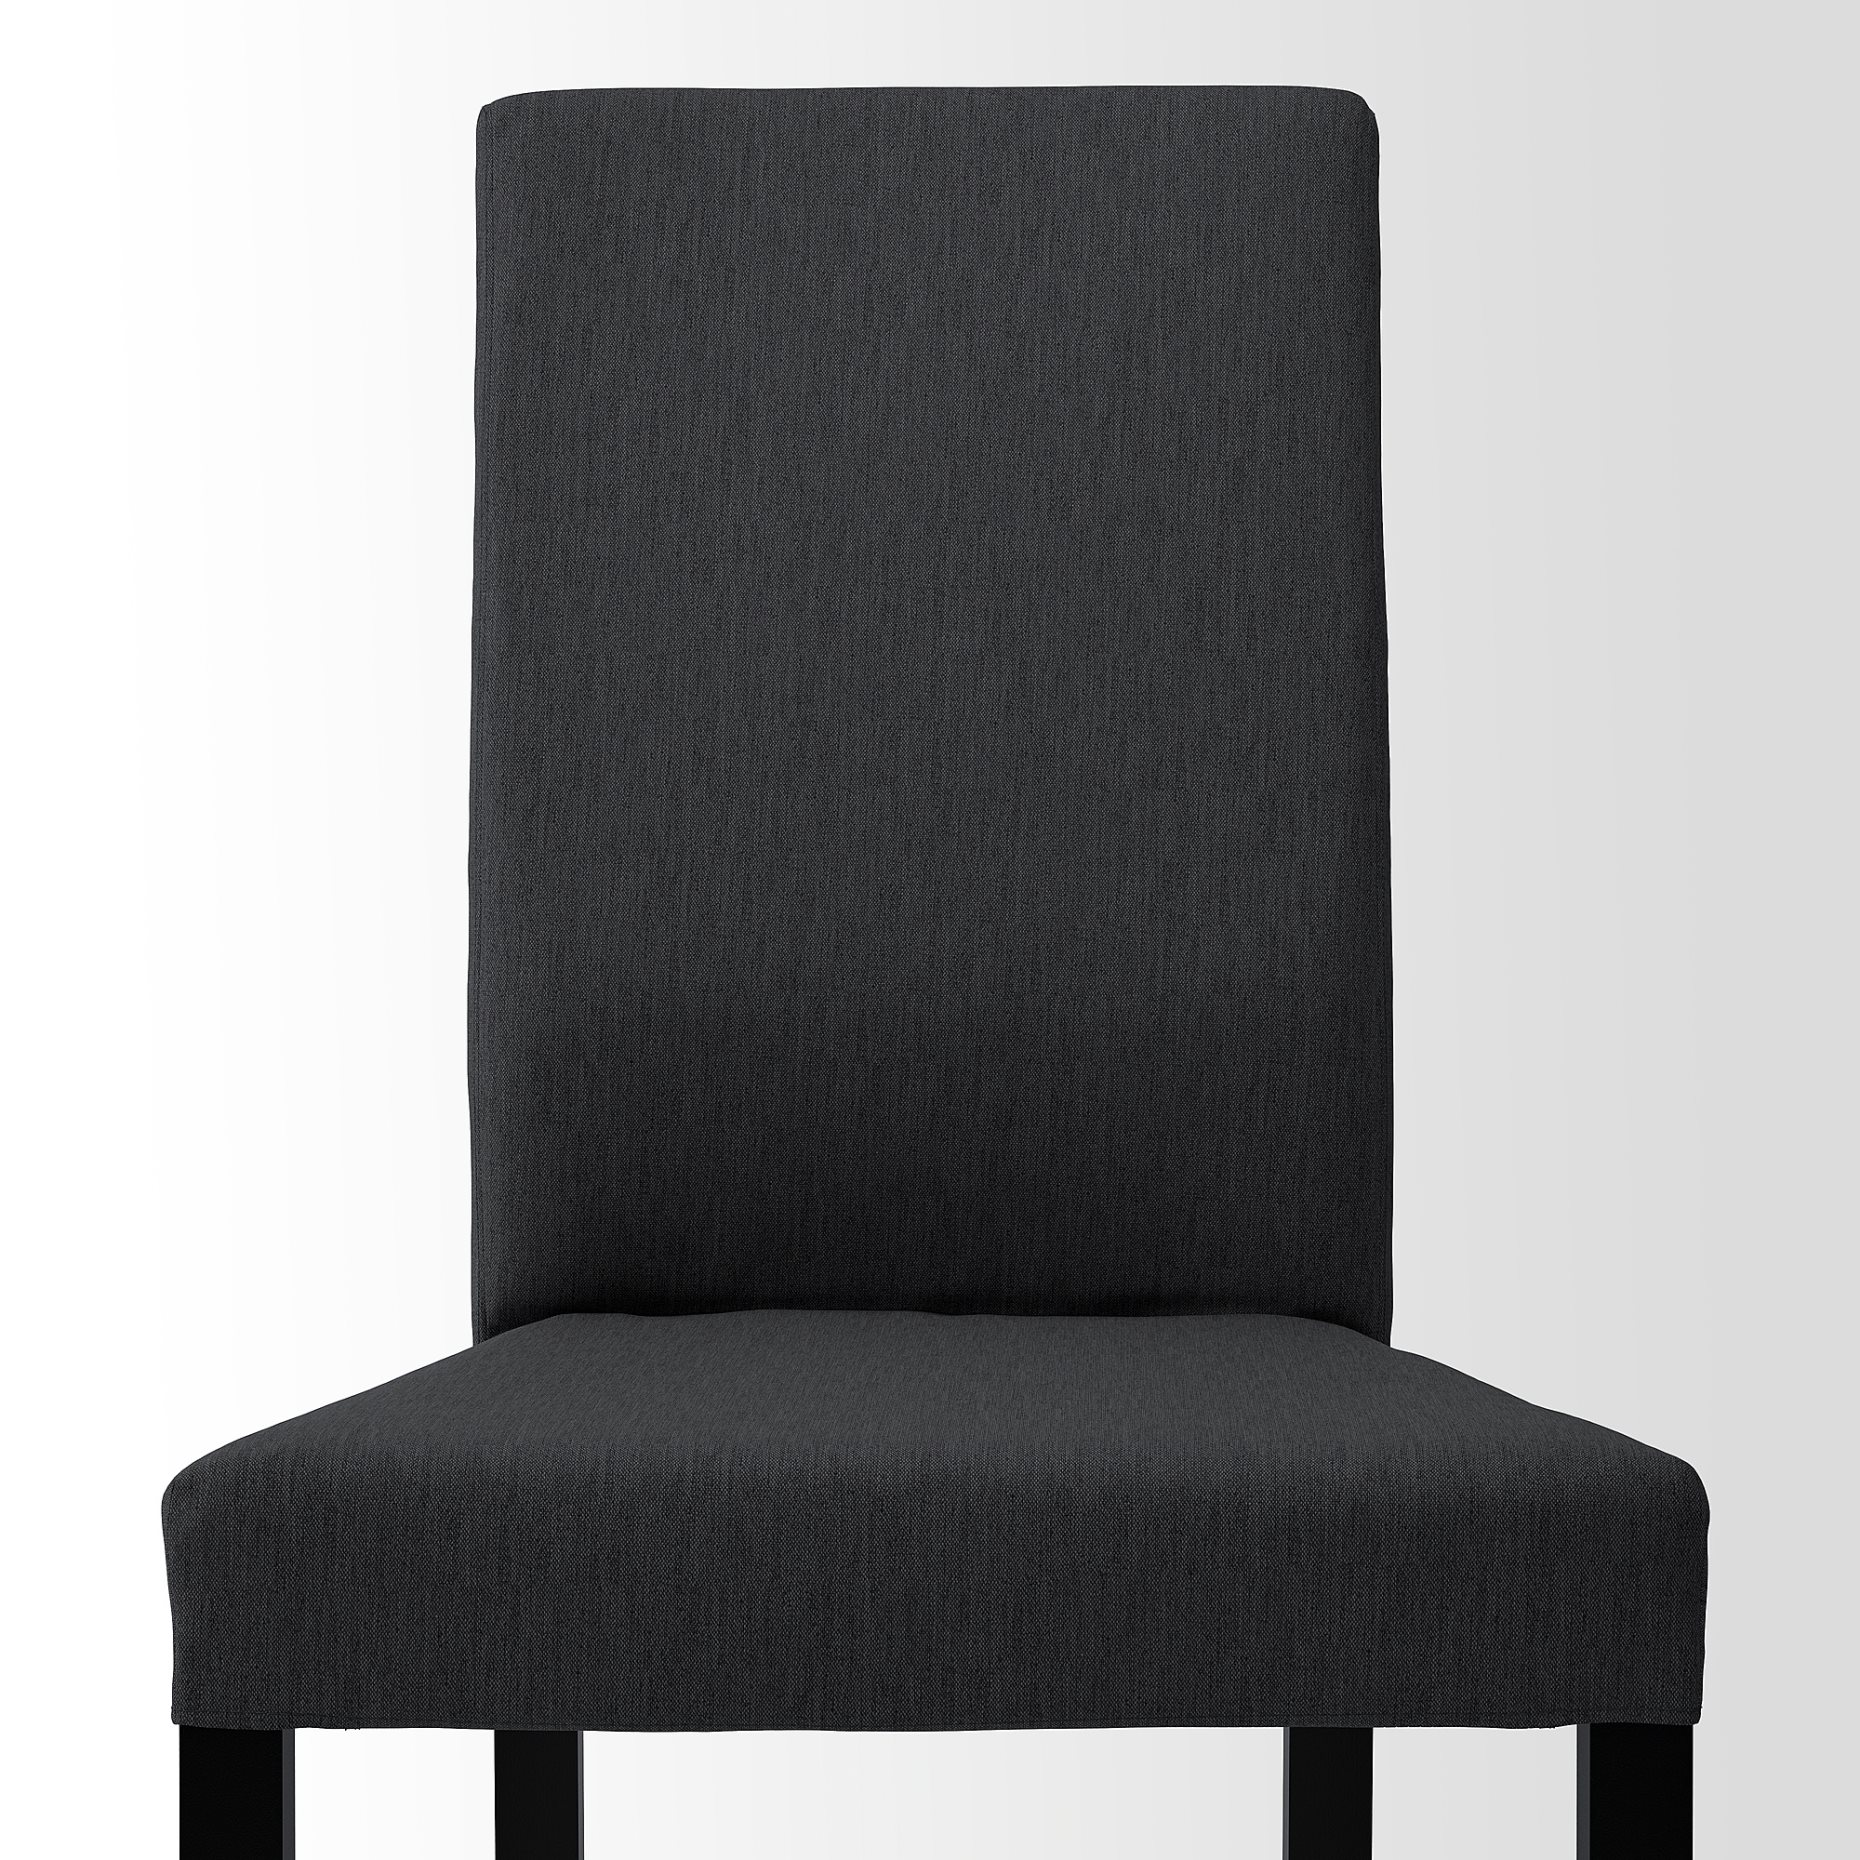 KÄTTIL, chair, 405.003.45